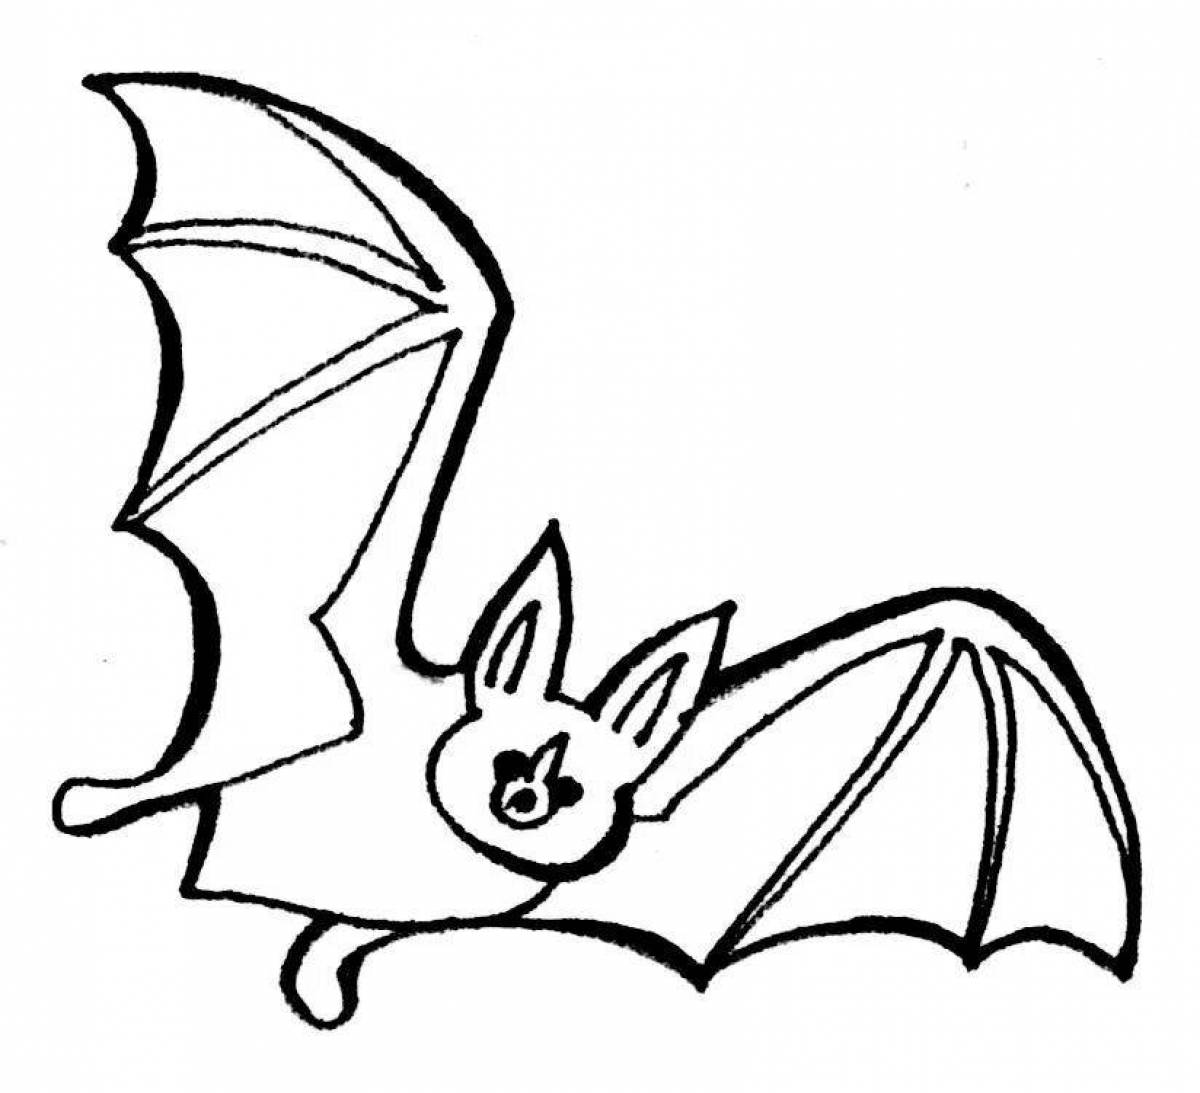 Cute bat coloring book for kids